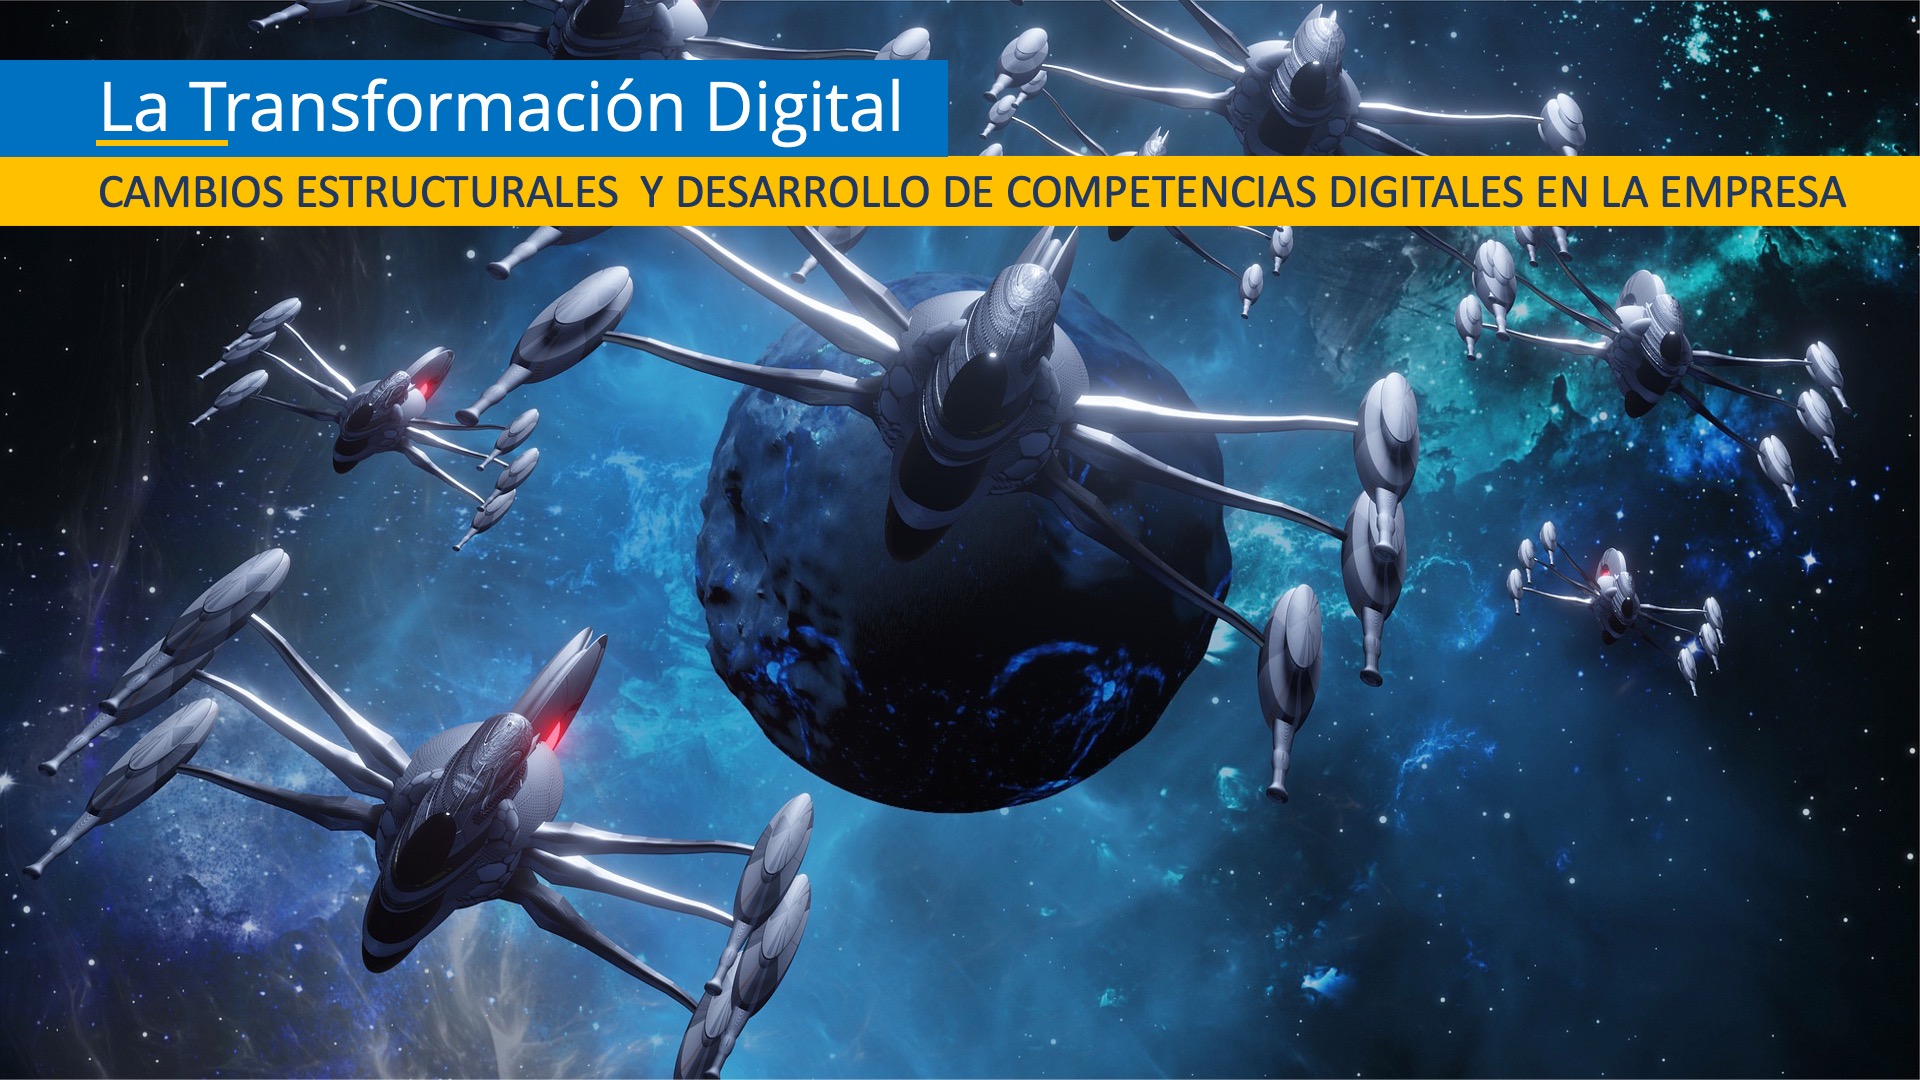 Los cambios estructurales a la empresa y el desarrollo de de competencias digitales es el objetivo de la Transformación Digital